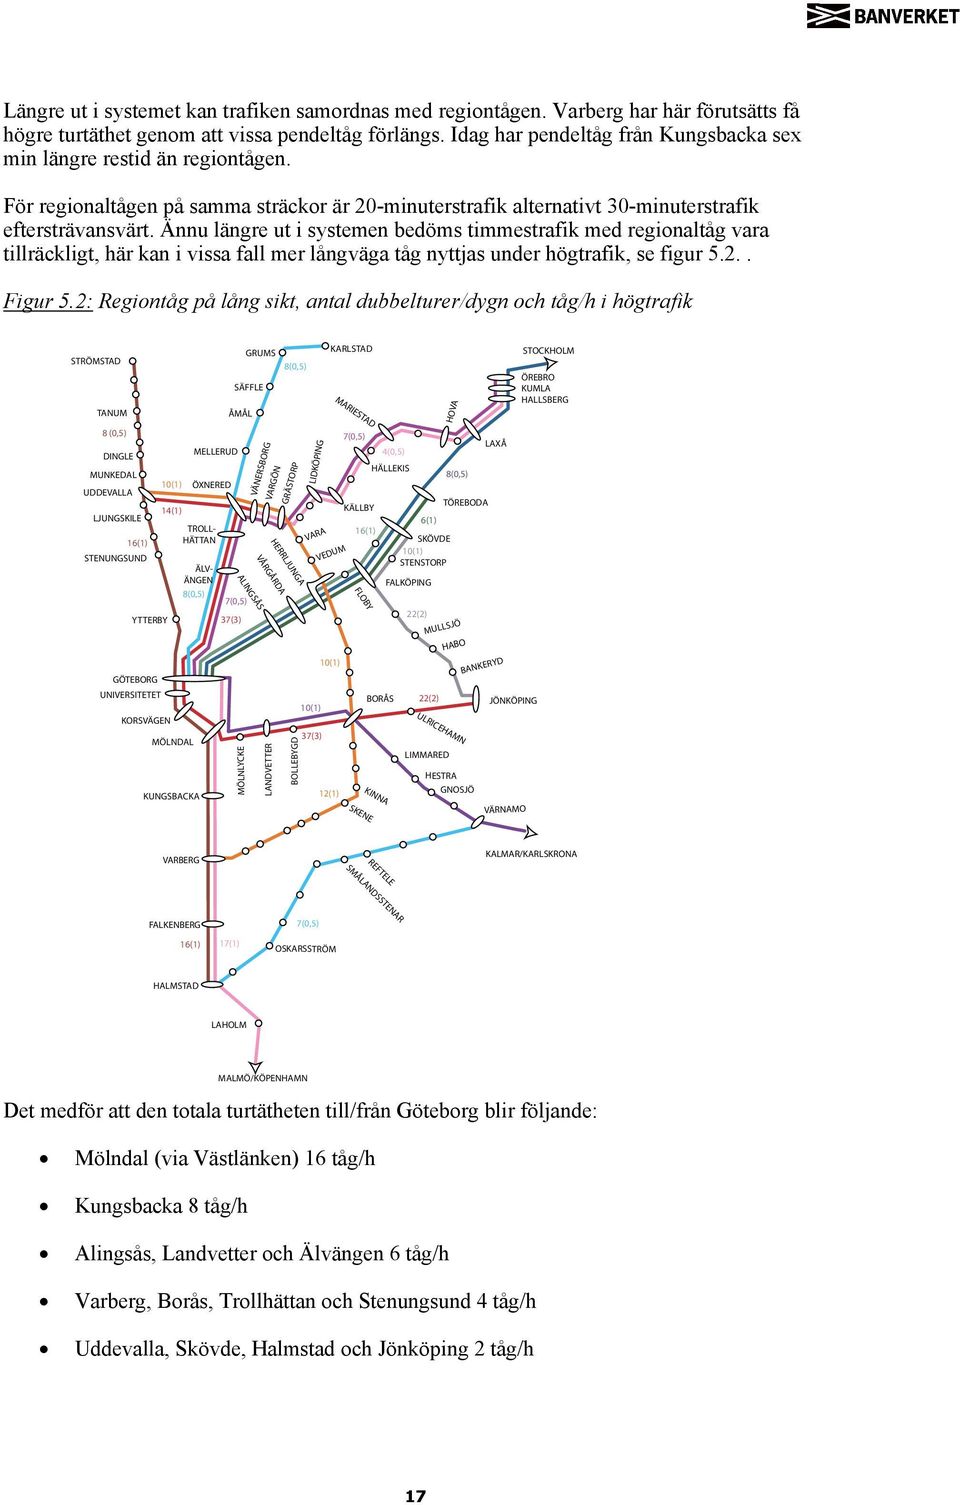 Ännu längre ut i systemen bedöms timmestrafik med regionaltåg vara tillräckligt, Regionaltåg här kan på lång i vissa sikt fall mer långväga tåg nyttjas under högtrafik, se figur 5.2.